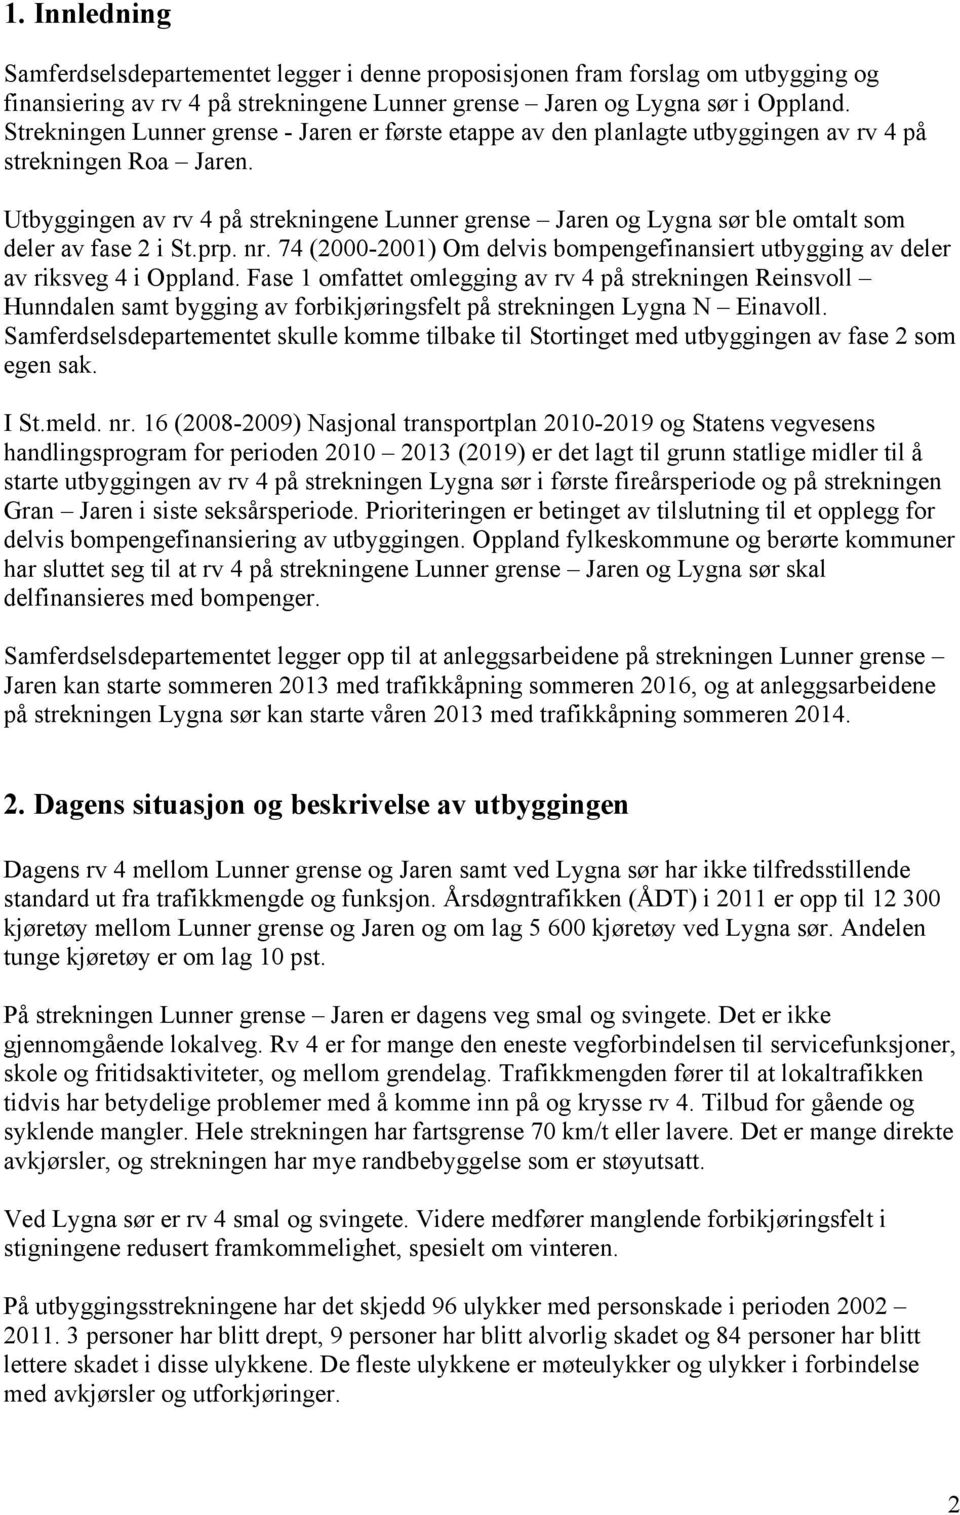 Utbyggingen av rv 4 på strekningene Lunner grense Jaren og Lygna sør ble omtalt som deler av fase 2 i St.prp. nr. 74 (2000-2001) Om delvis bompengefinansiert utbygging av deler av riksveg 4 i Oppland.